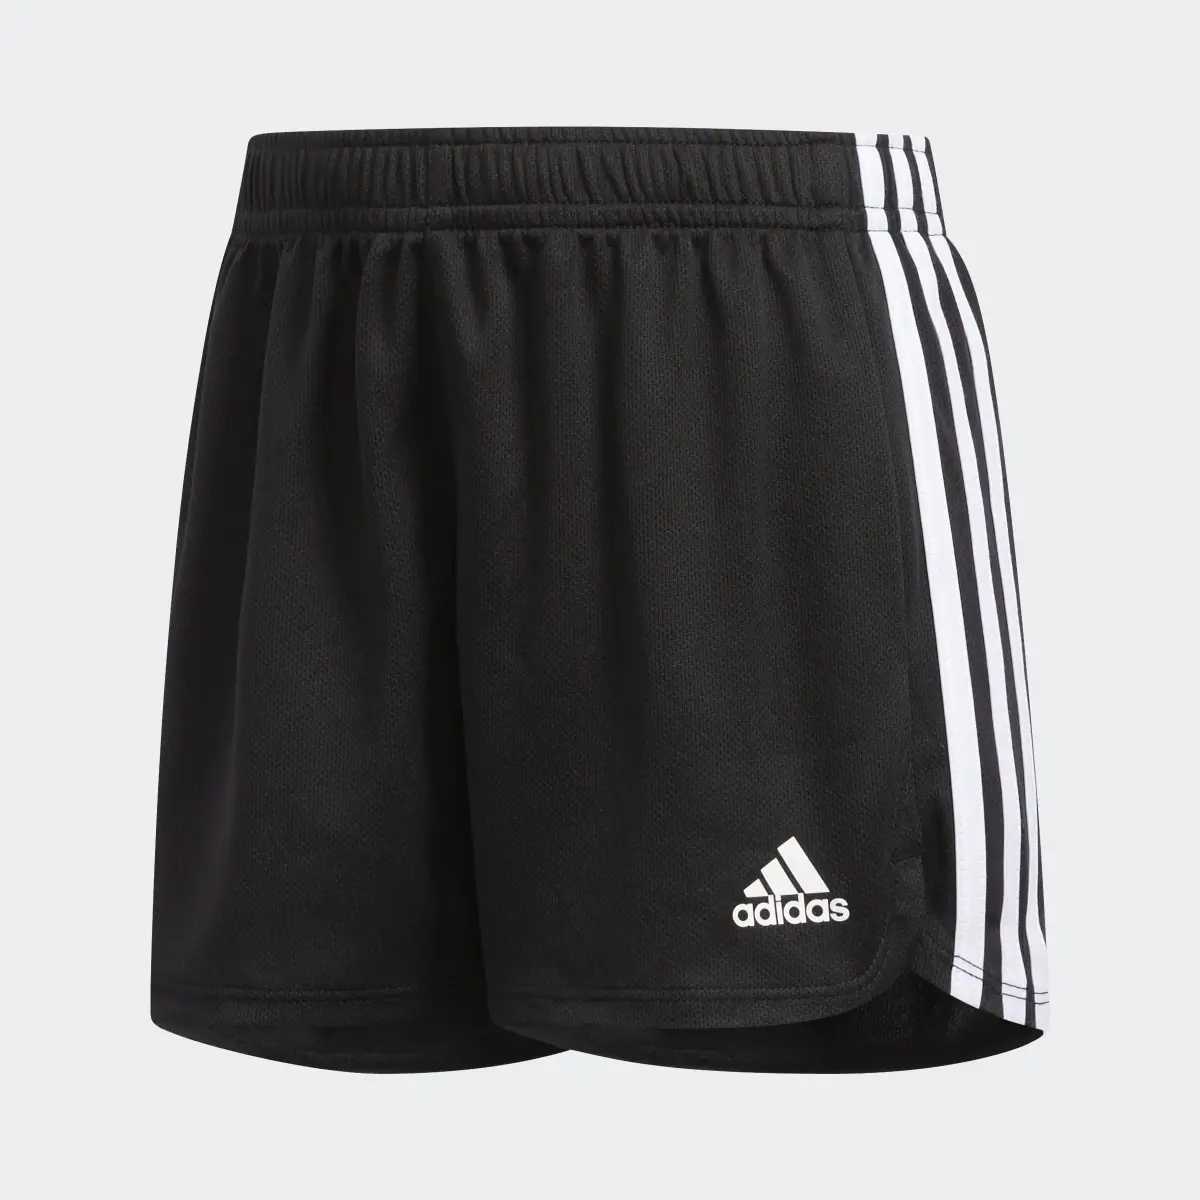 Adidas 3-Stripes Mesh Shorts. 1